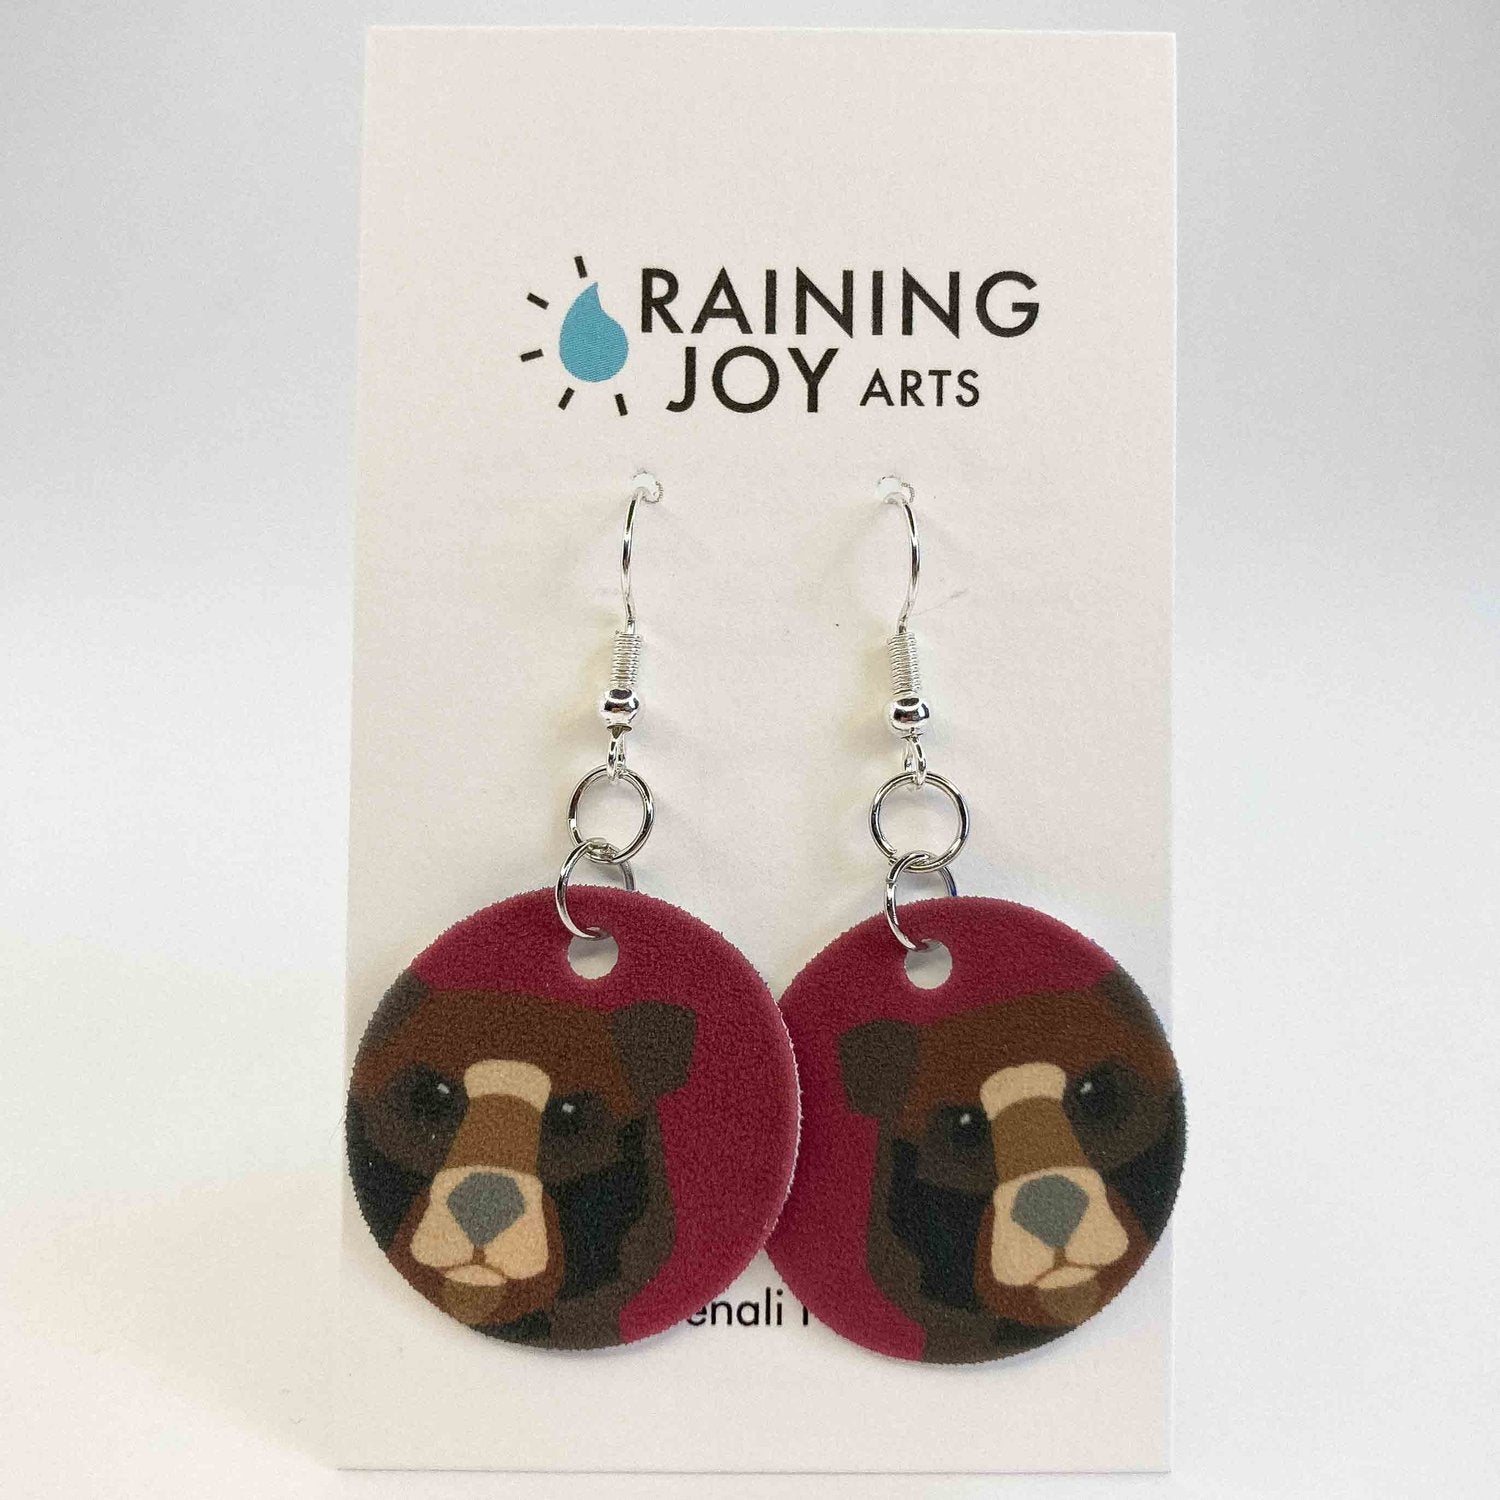 Grizzly Bear Earrings